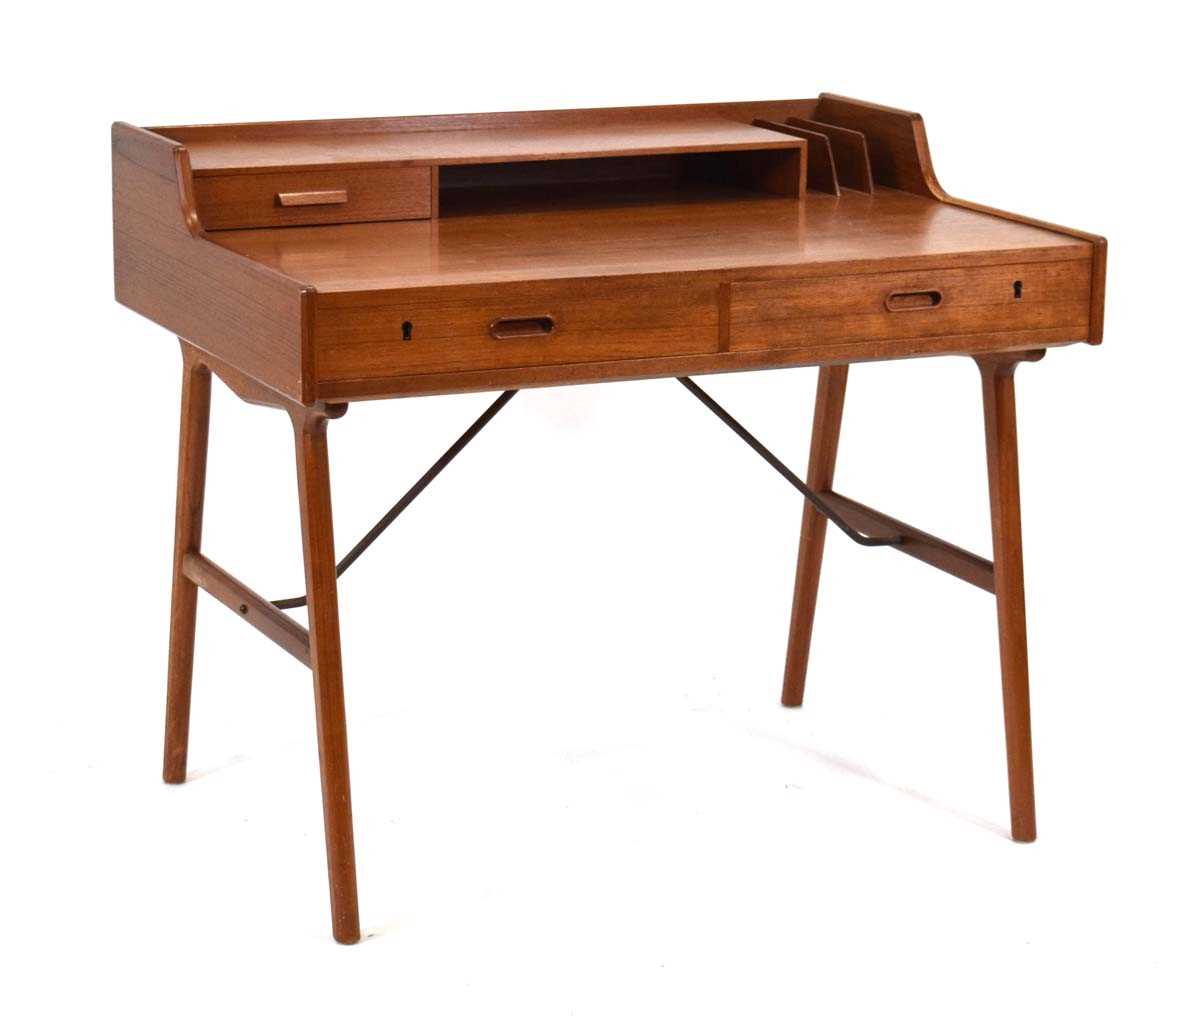 Arne Wahl Iversen for Vinde Mobelfabrik, a 1950/60's Danish teak desk, Model 56, the